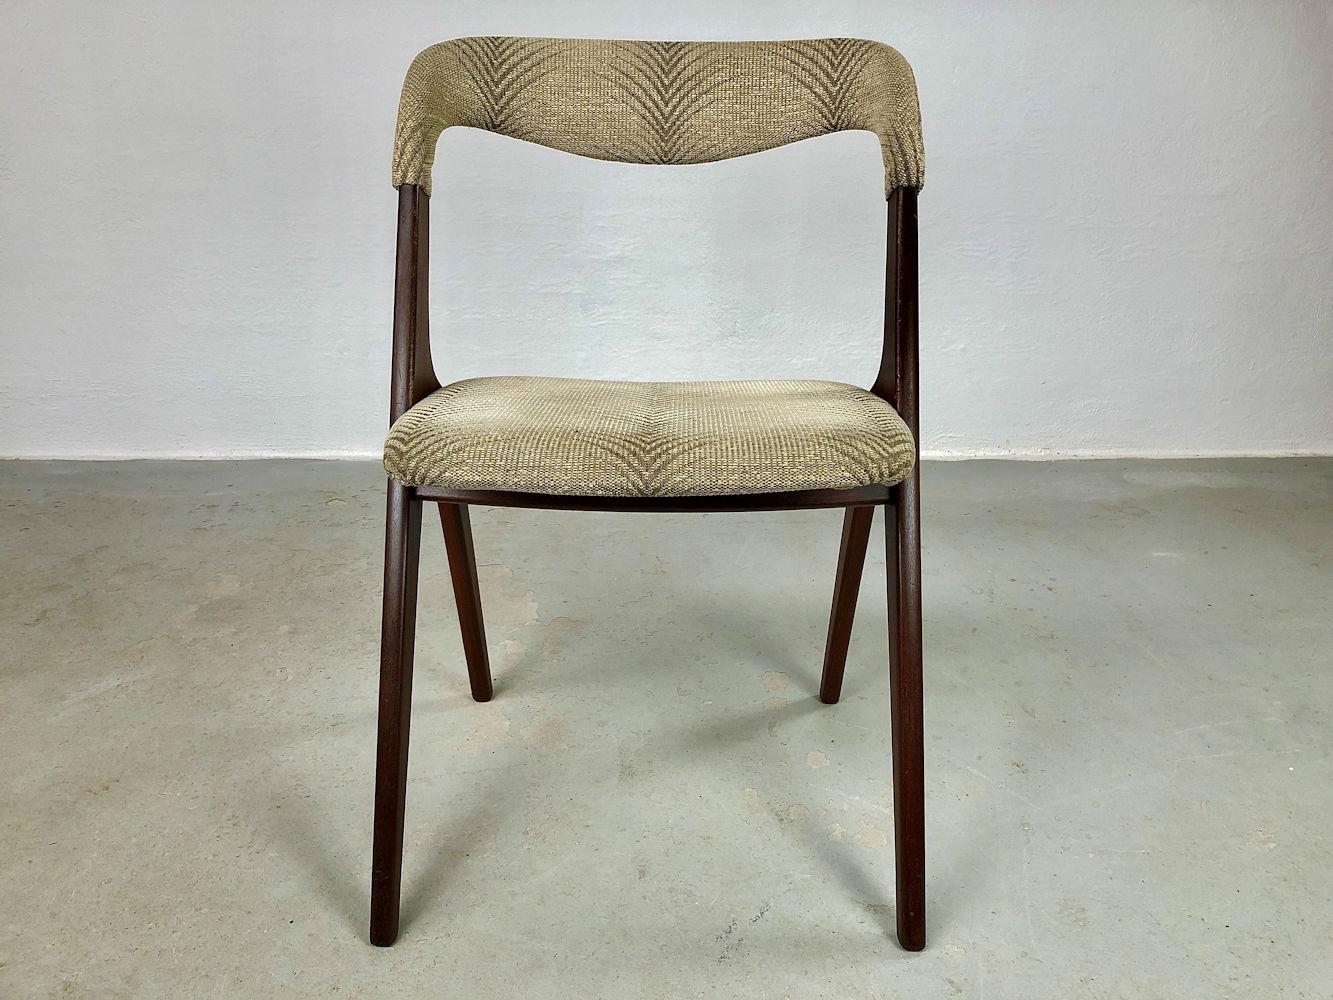 Ensemble de six chaises de salle à manger Johannes Andersen restaurées en teck, y compris le rembourrage personnalisé conçu pour Vamo Sønderborg. 

Ces chaises confortables sont dotées d'un solide cadre en teck de forme minimaliste et d'un dossier